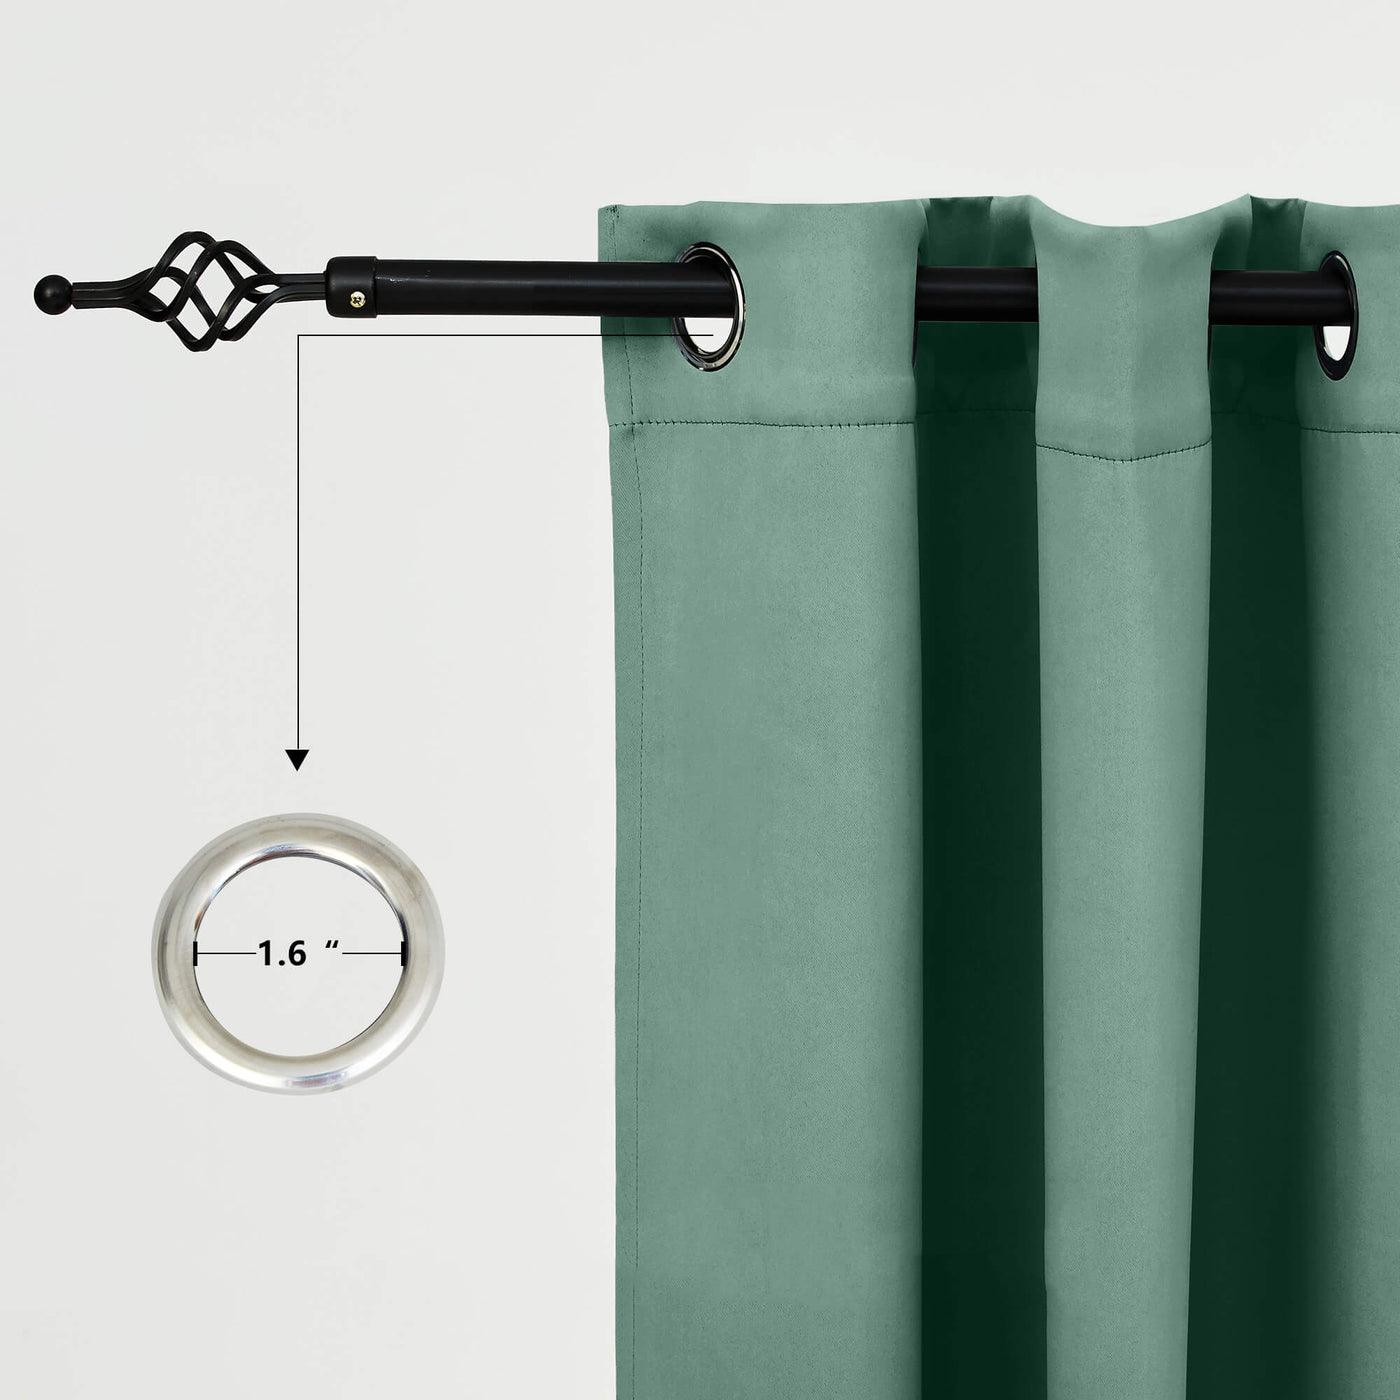 Outdoor Curtains Waterproof Grommet Top 1 Panel - Green